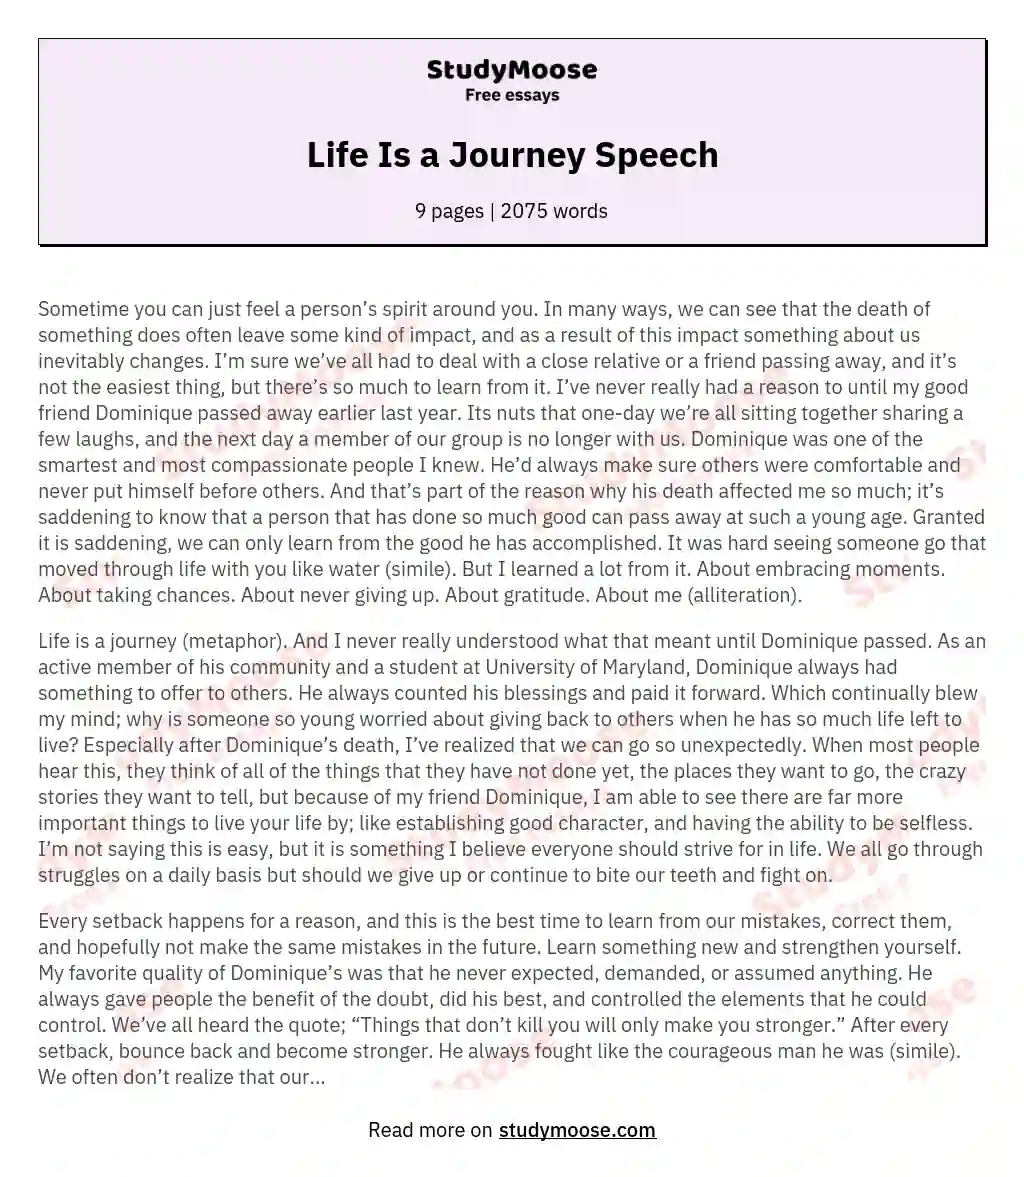 Life Is a Journey Speech